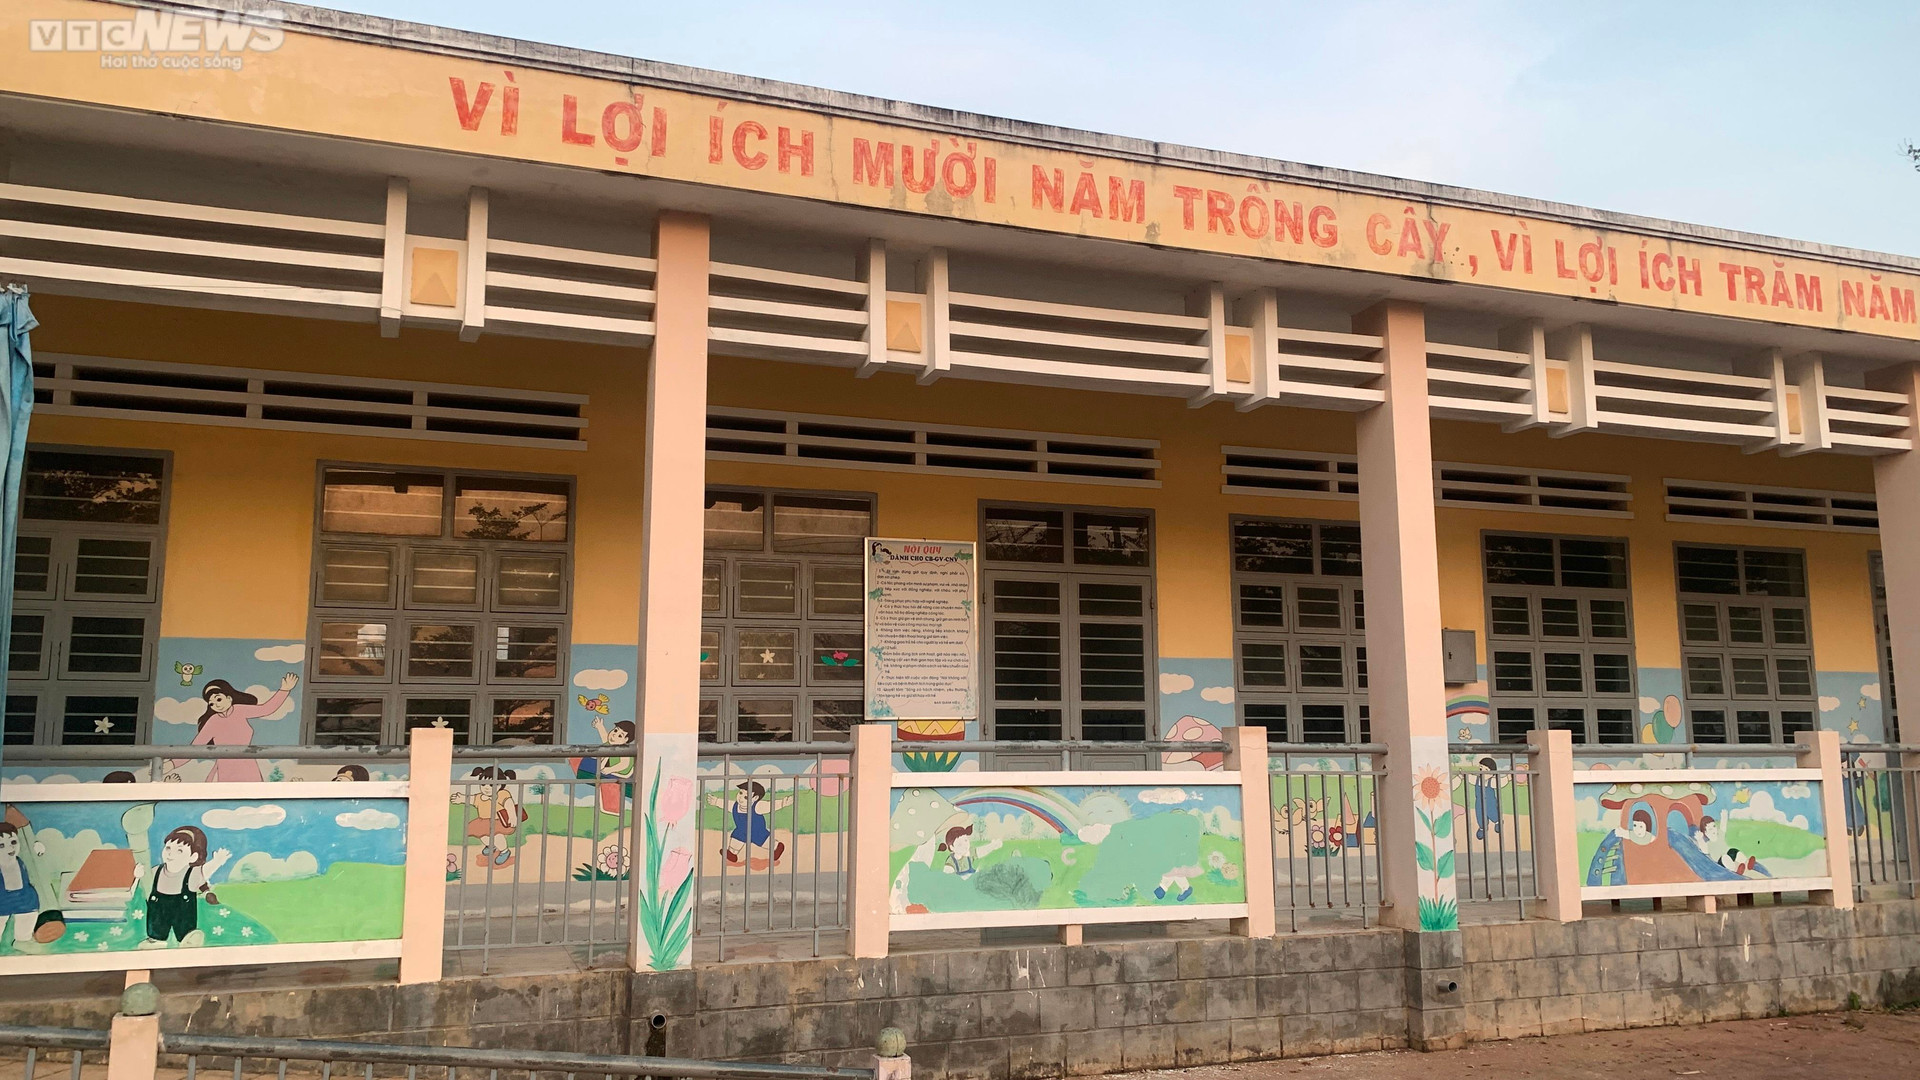 Điểm Trường mẫu giáo Thái Xuân được xây dựng 1 tầng, có 4 phòng học, sau khi bàn giao và nghiệm thu đưa vào sử dụng thì chỉ dạy 1 phòng còn 3 phòng để trống.